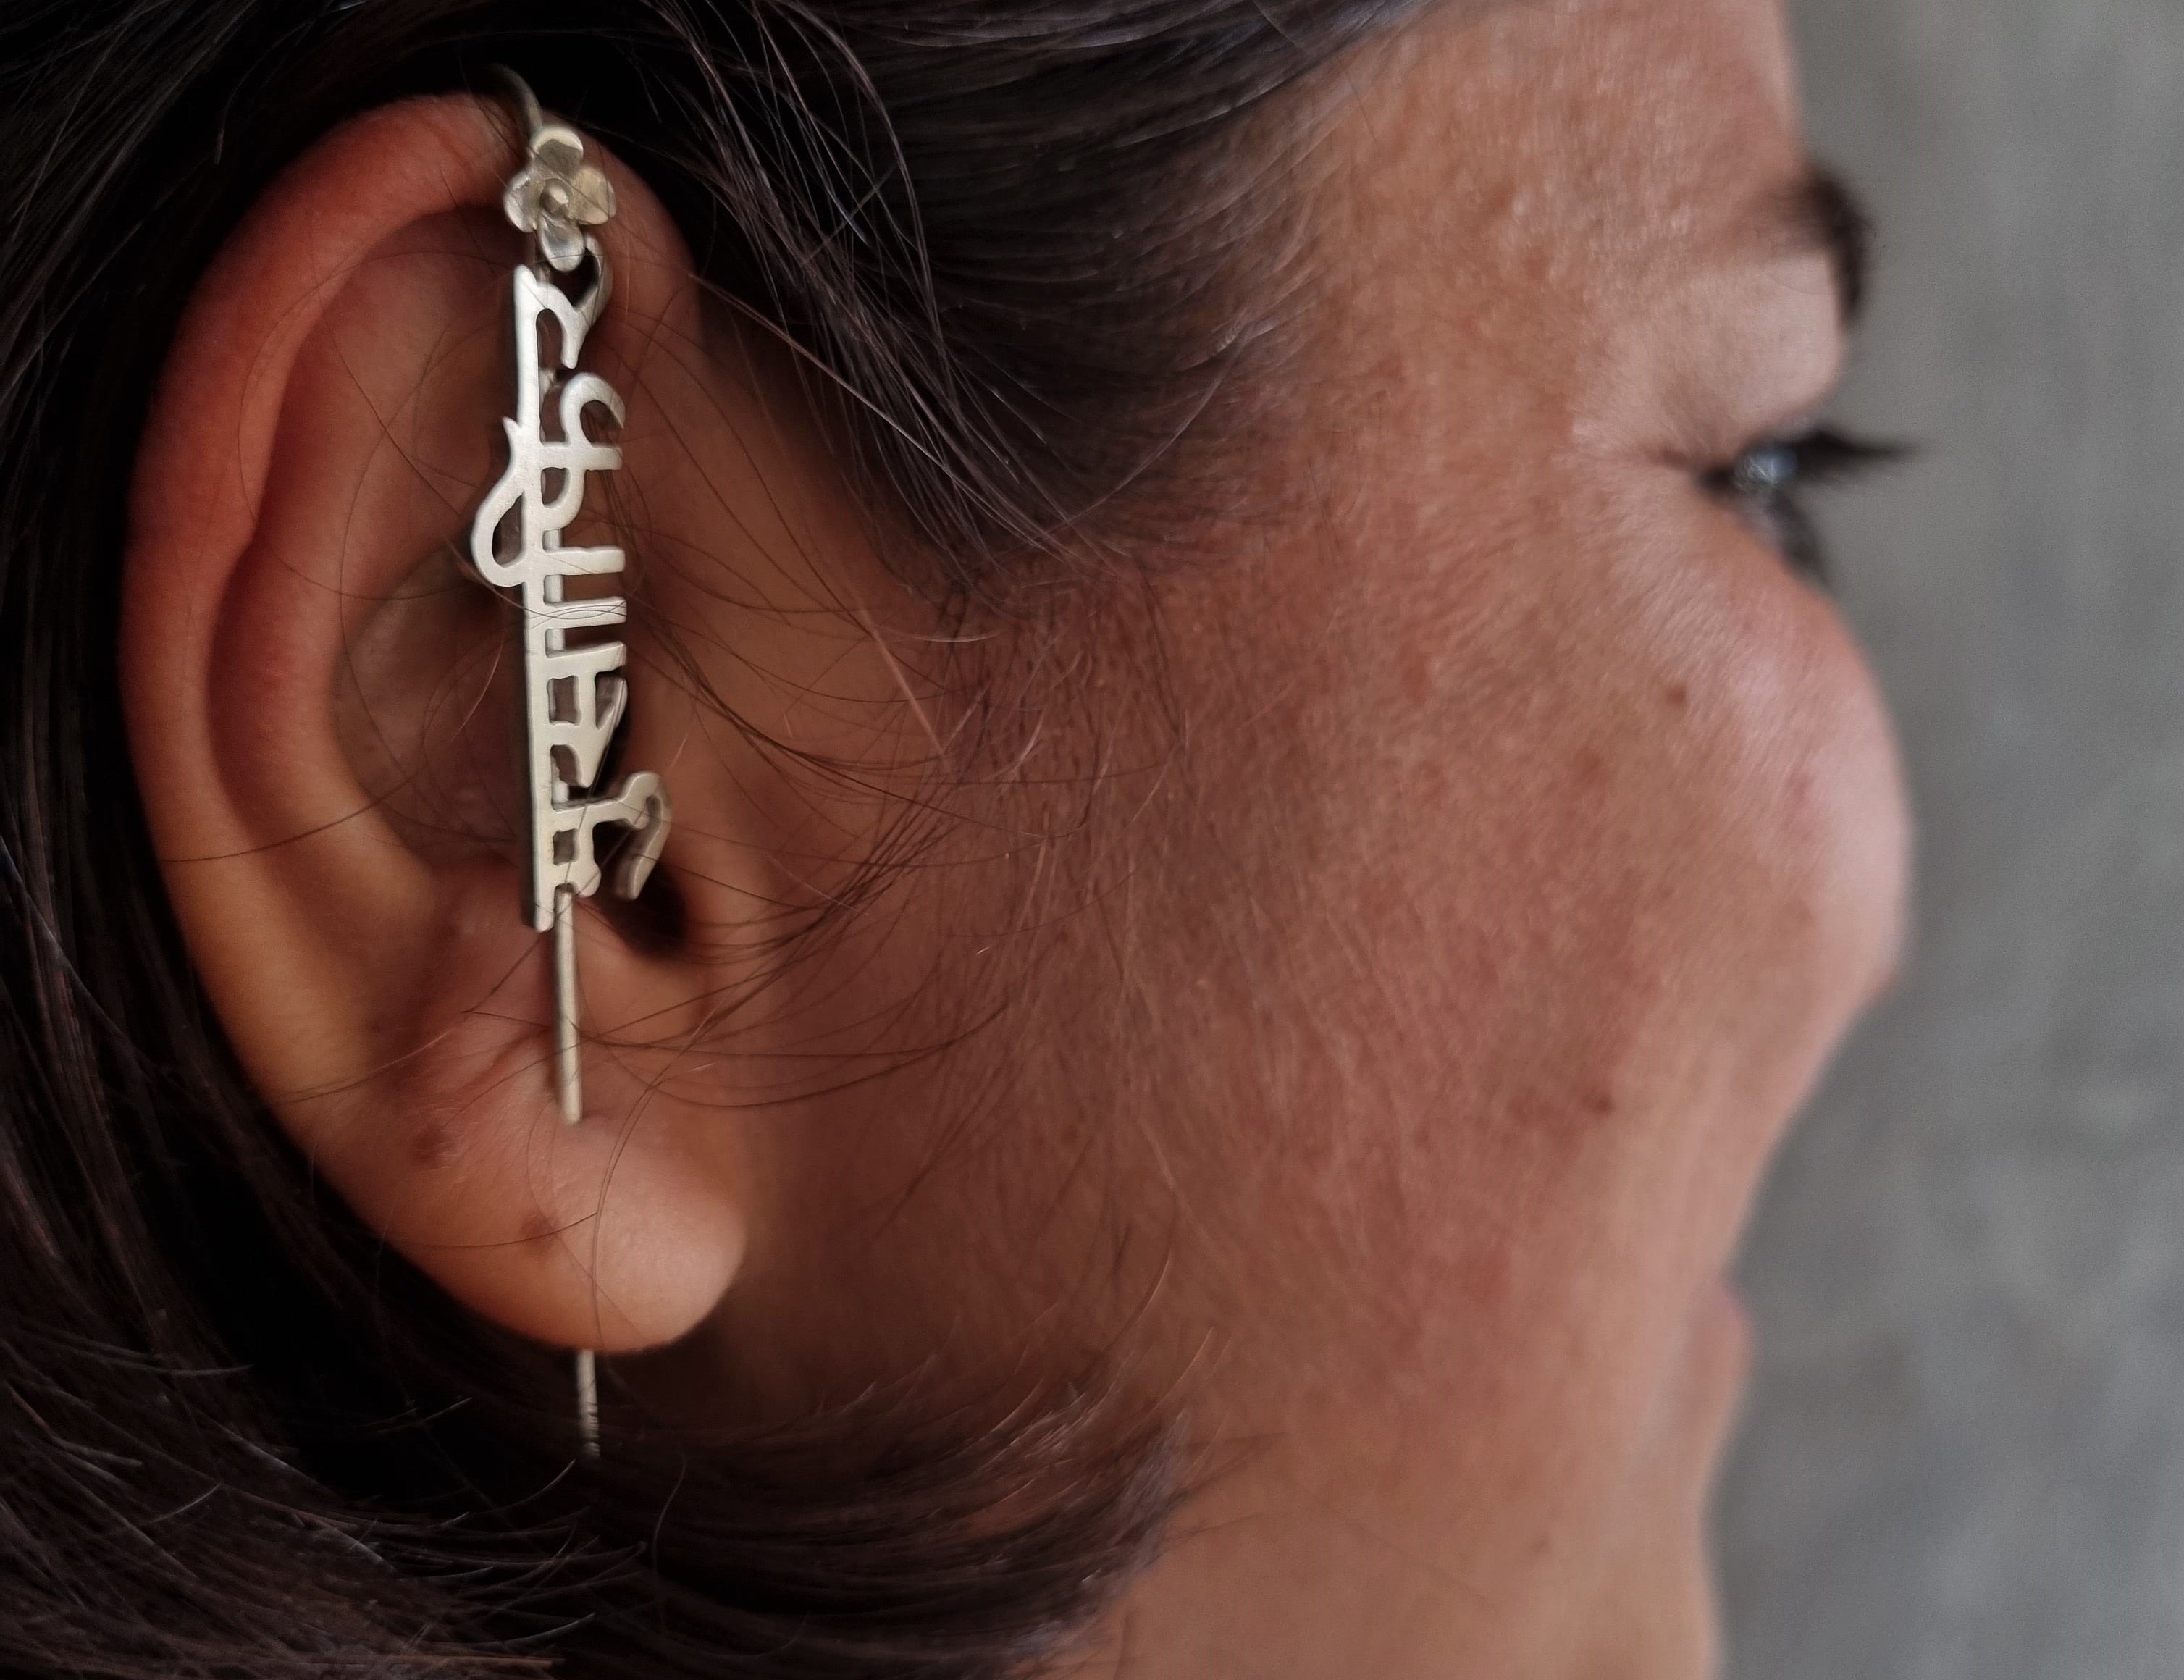 Buy Silver Ear Cuffs online in India - Musaafir Teeli Earcuff by Quirksmith